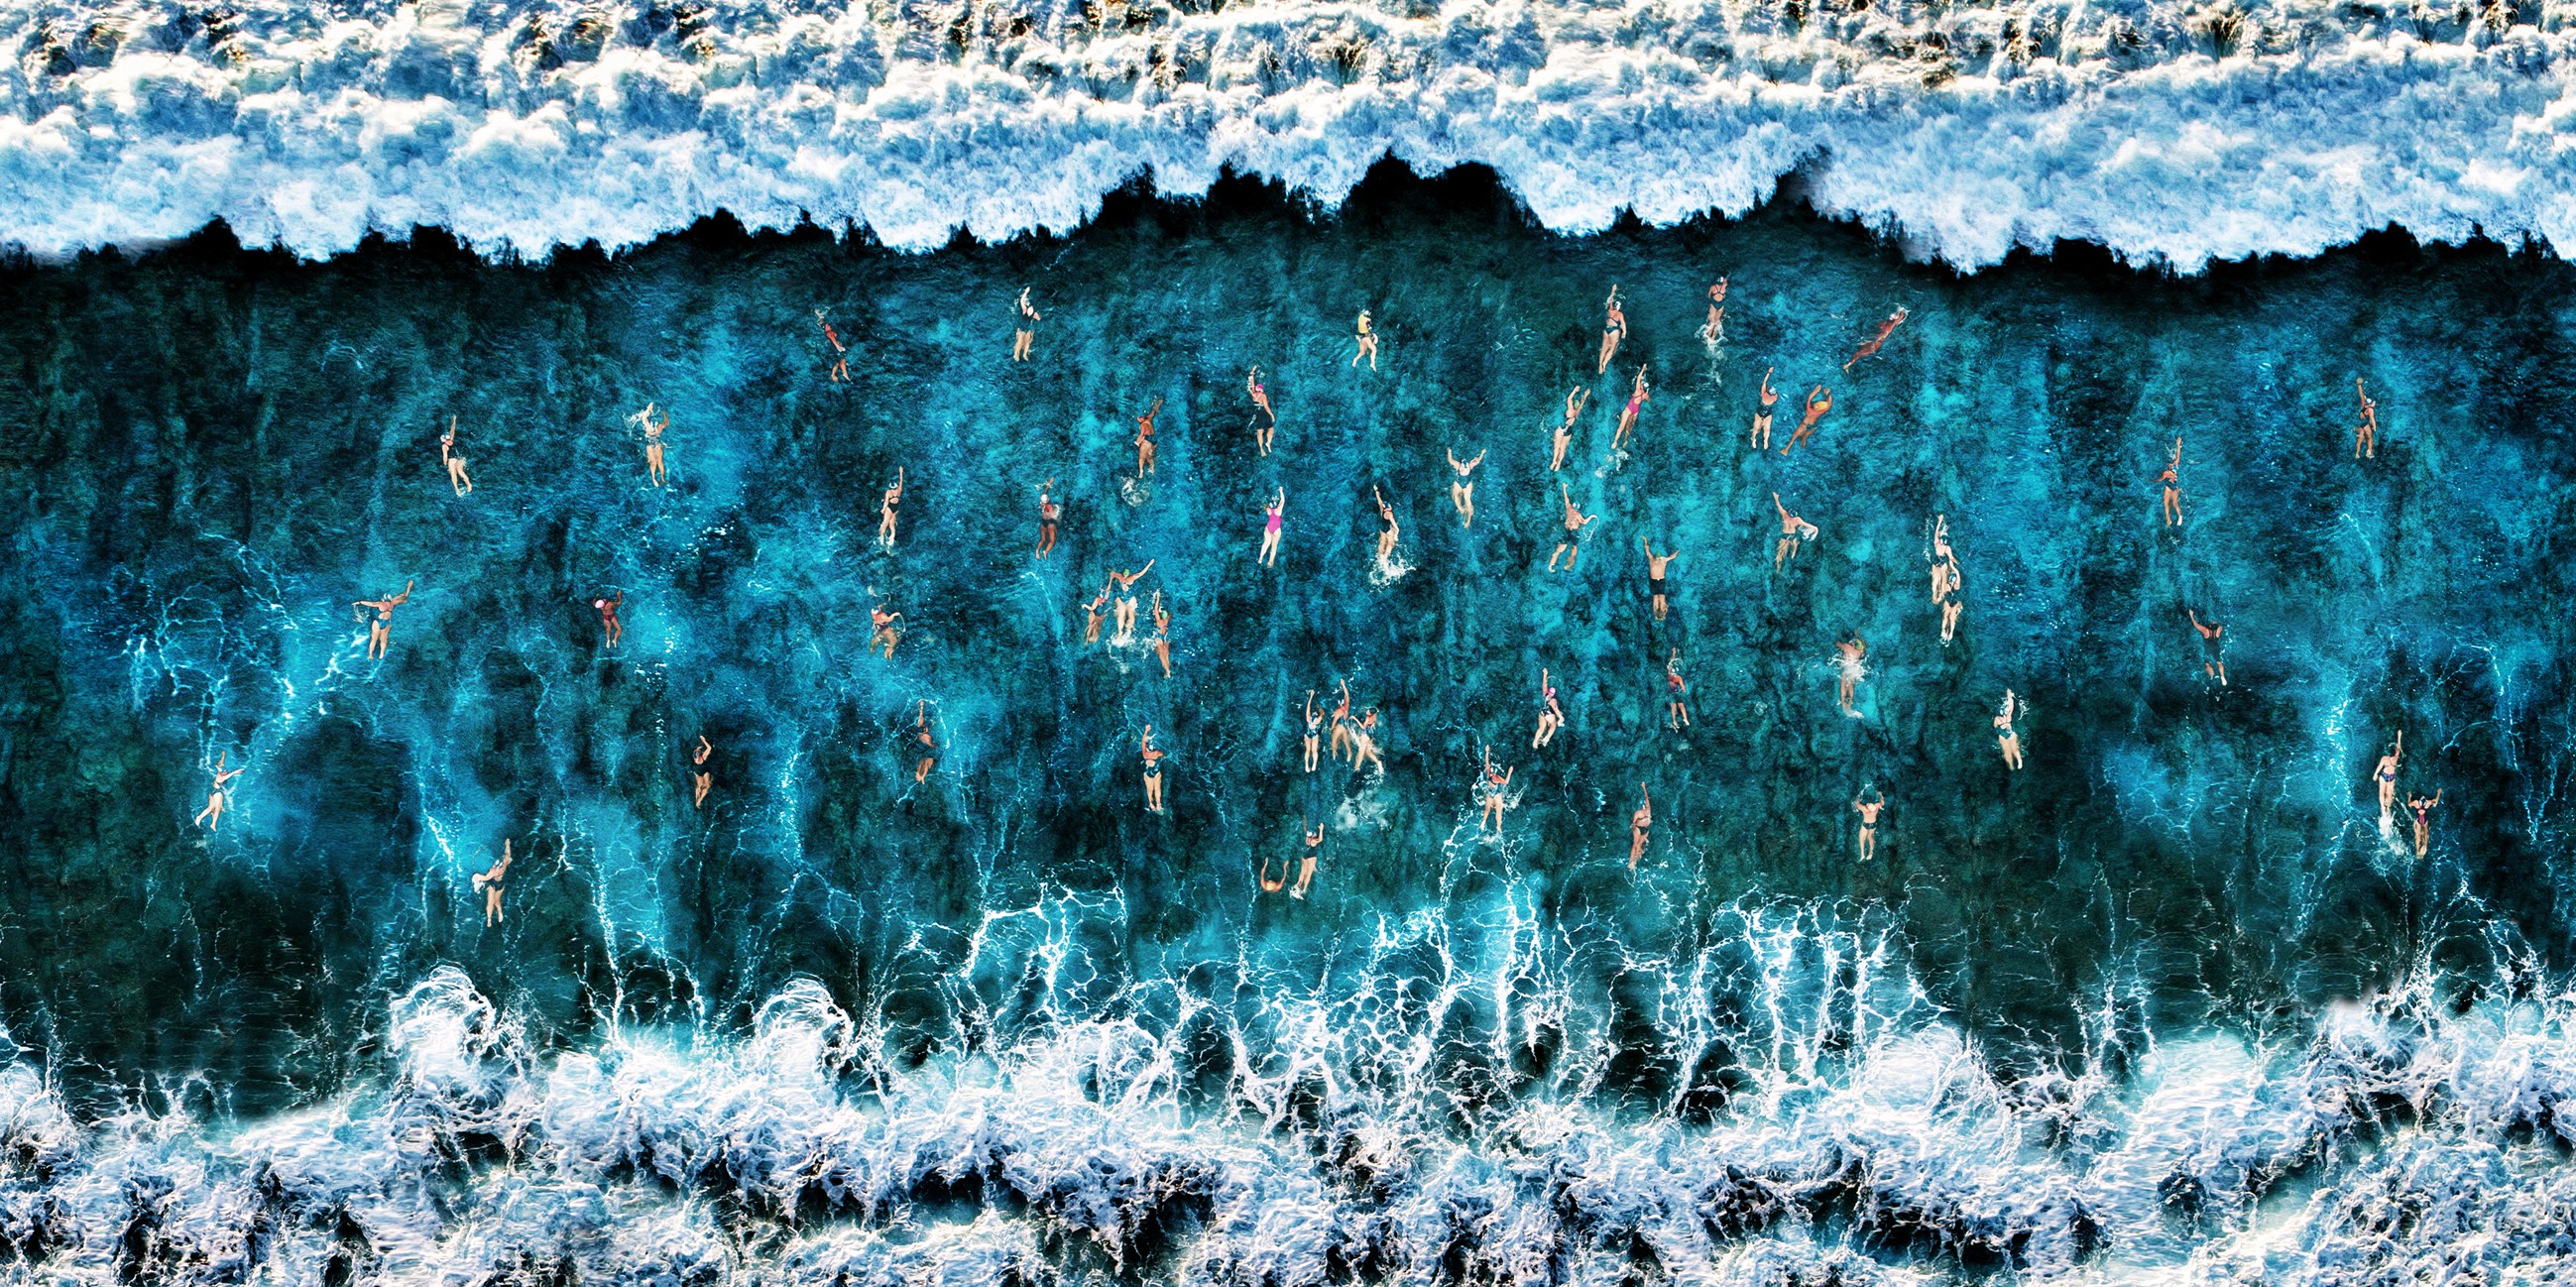 1 место в категории Аэрофотография, 2020. Люди-муравьи на море. Автор Роберто Коринальдези